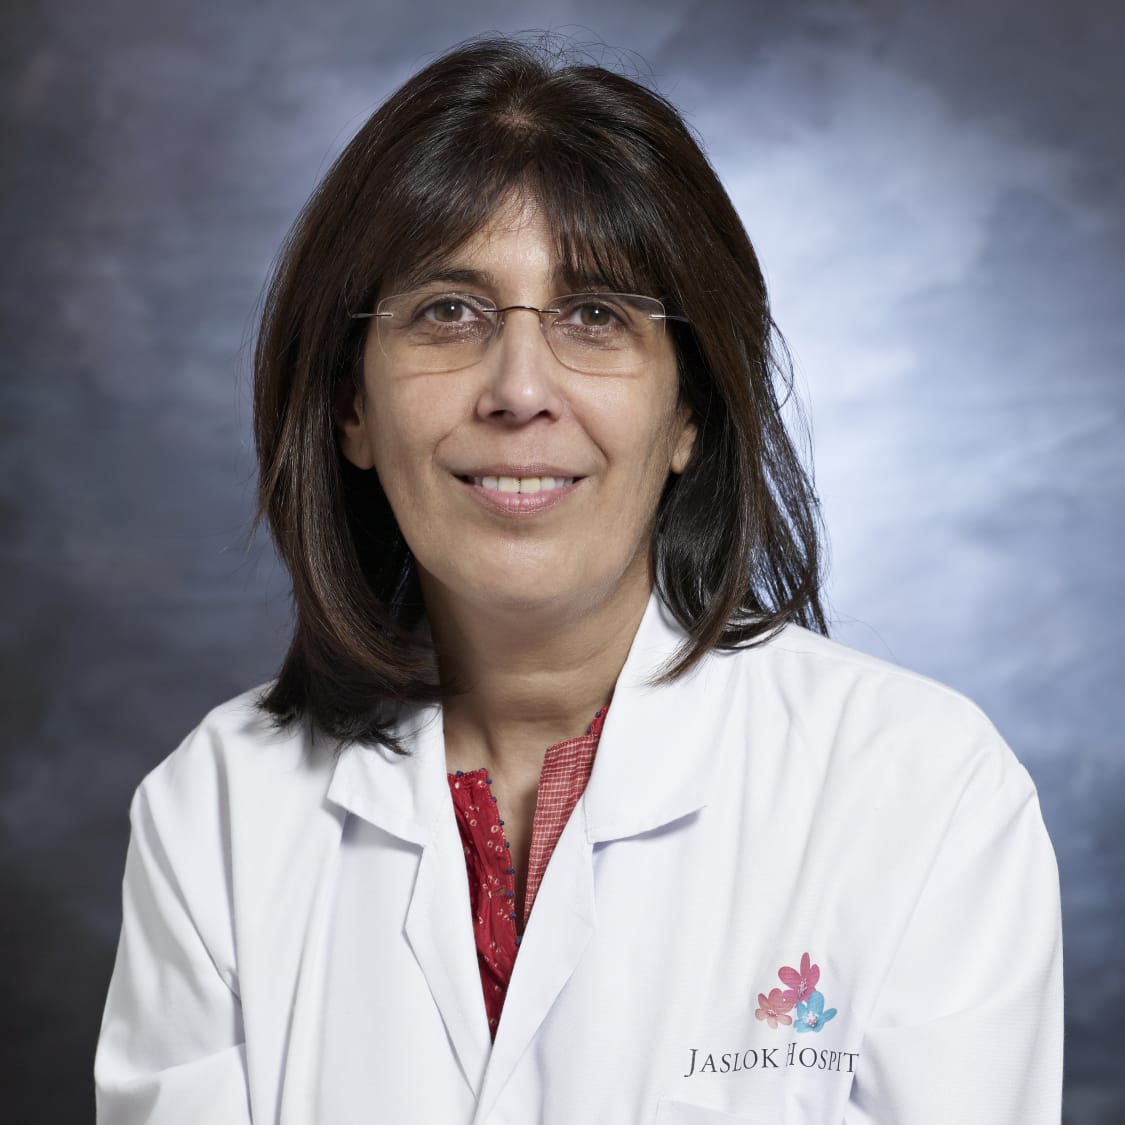 Dr. Anahita Pandole